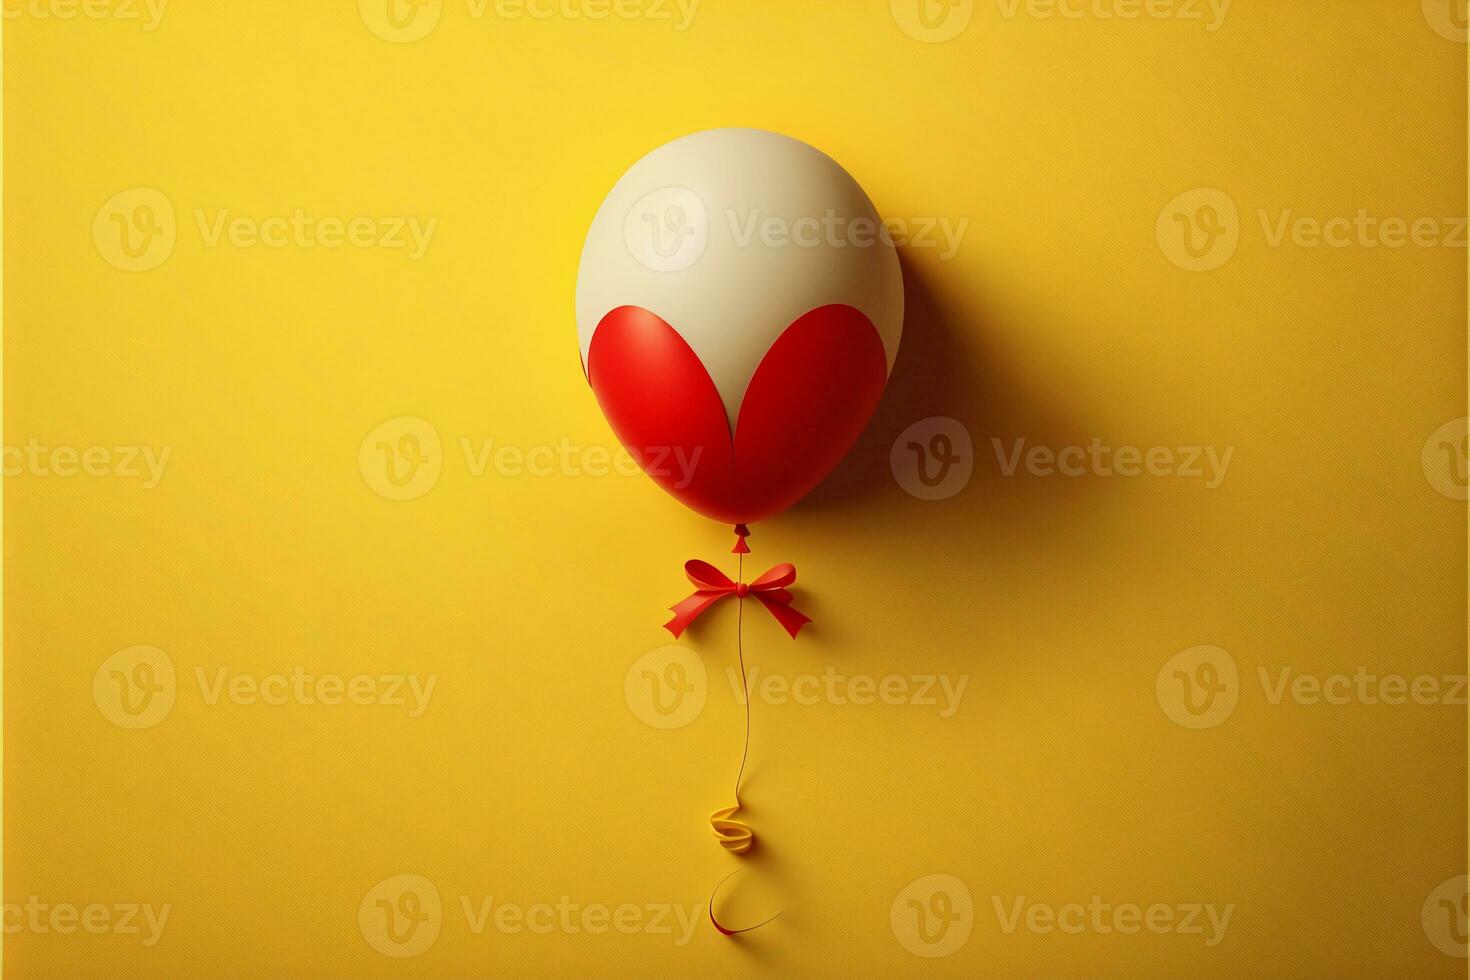 realista vermelho e branco balão com fita contra amarelo fundo. foto